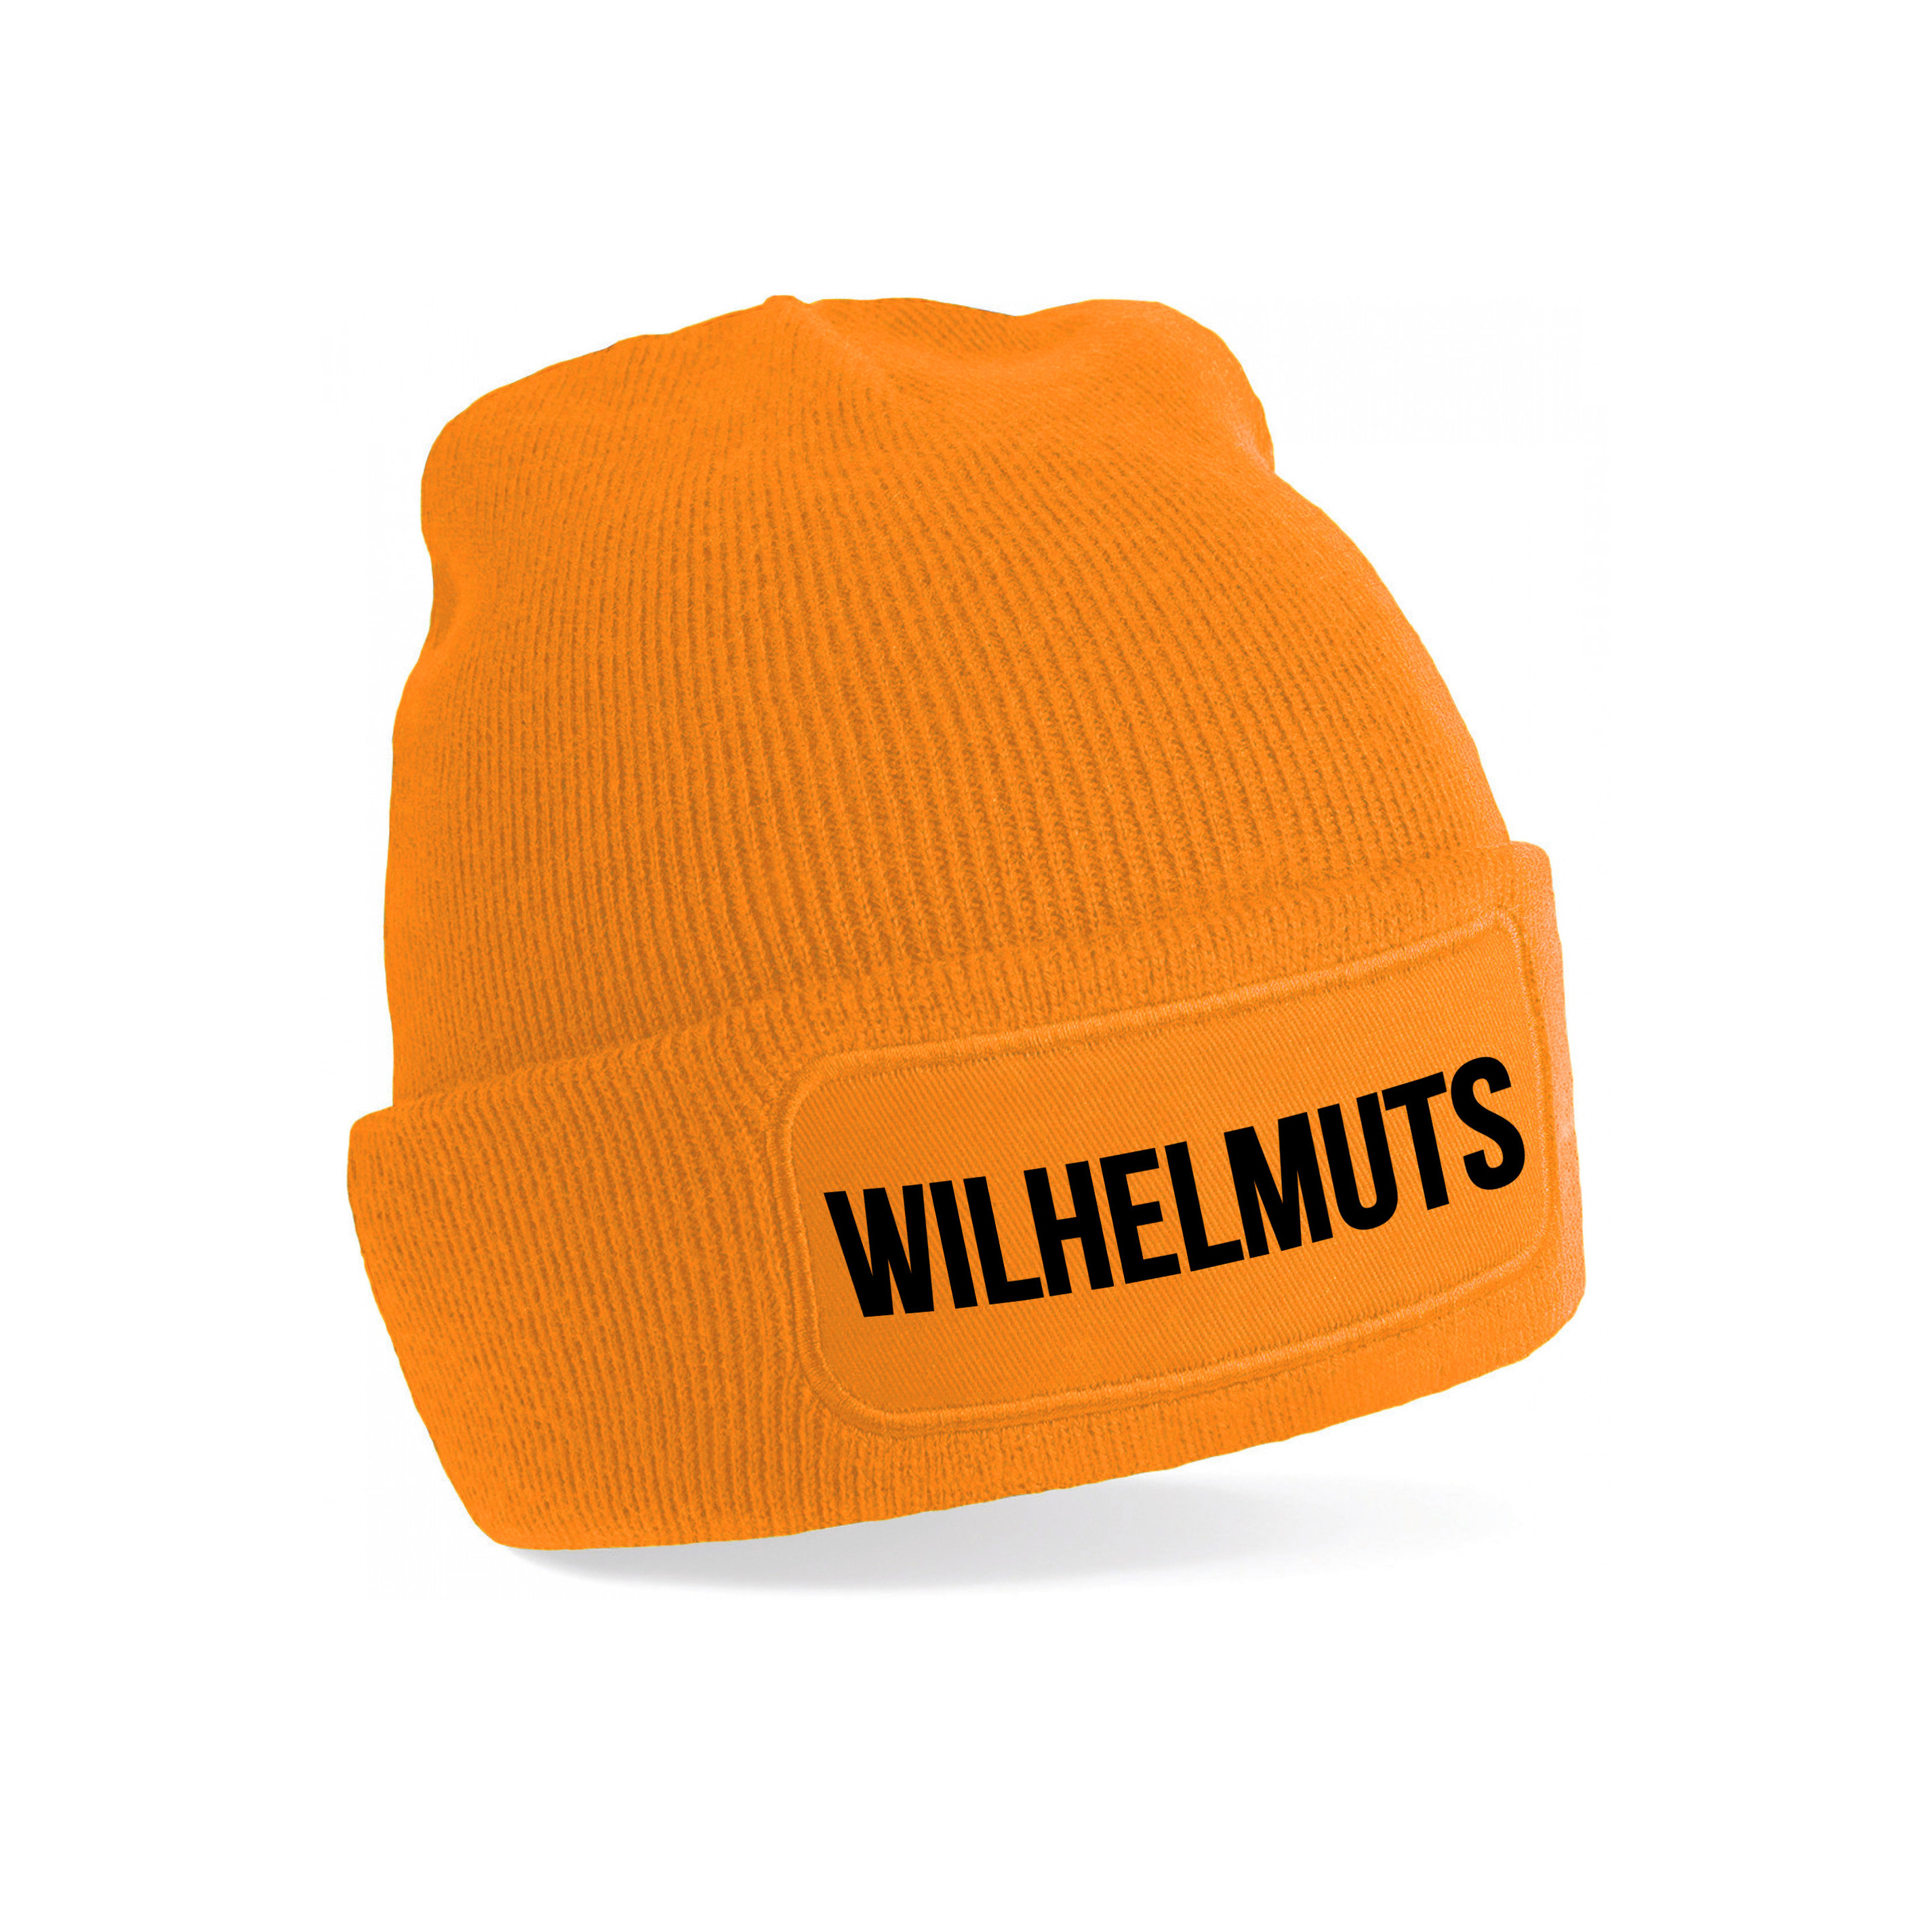 Oranje muts Wilhelmuts - Koningsdag - EK/WK voetbal - one size -